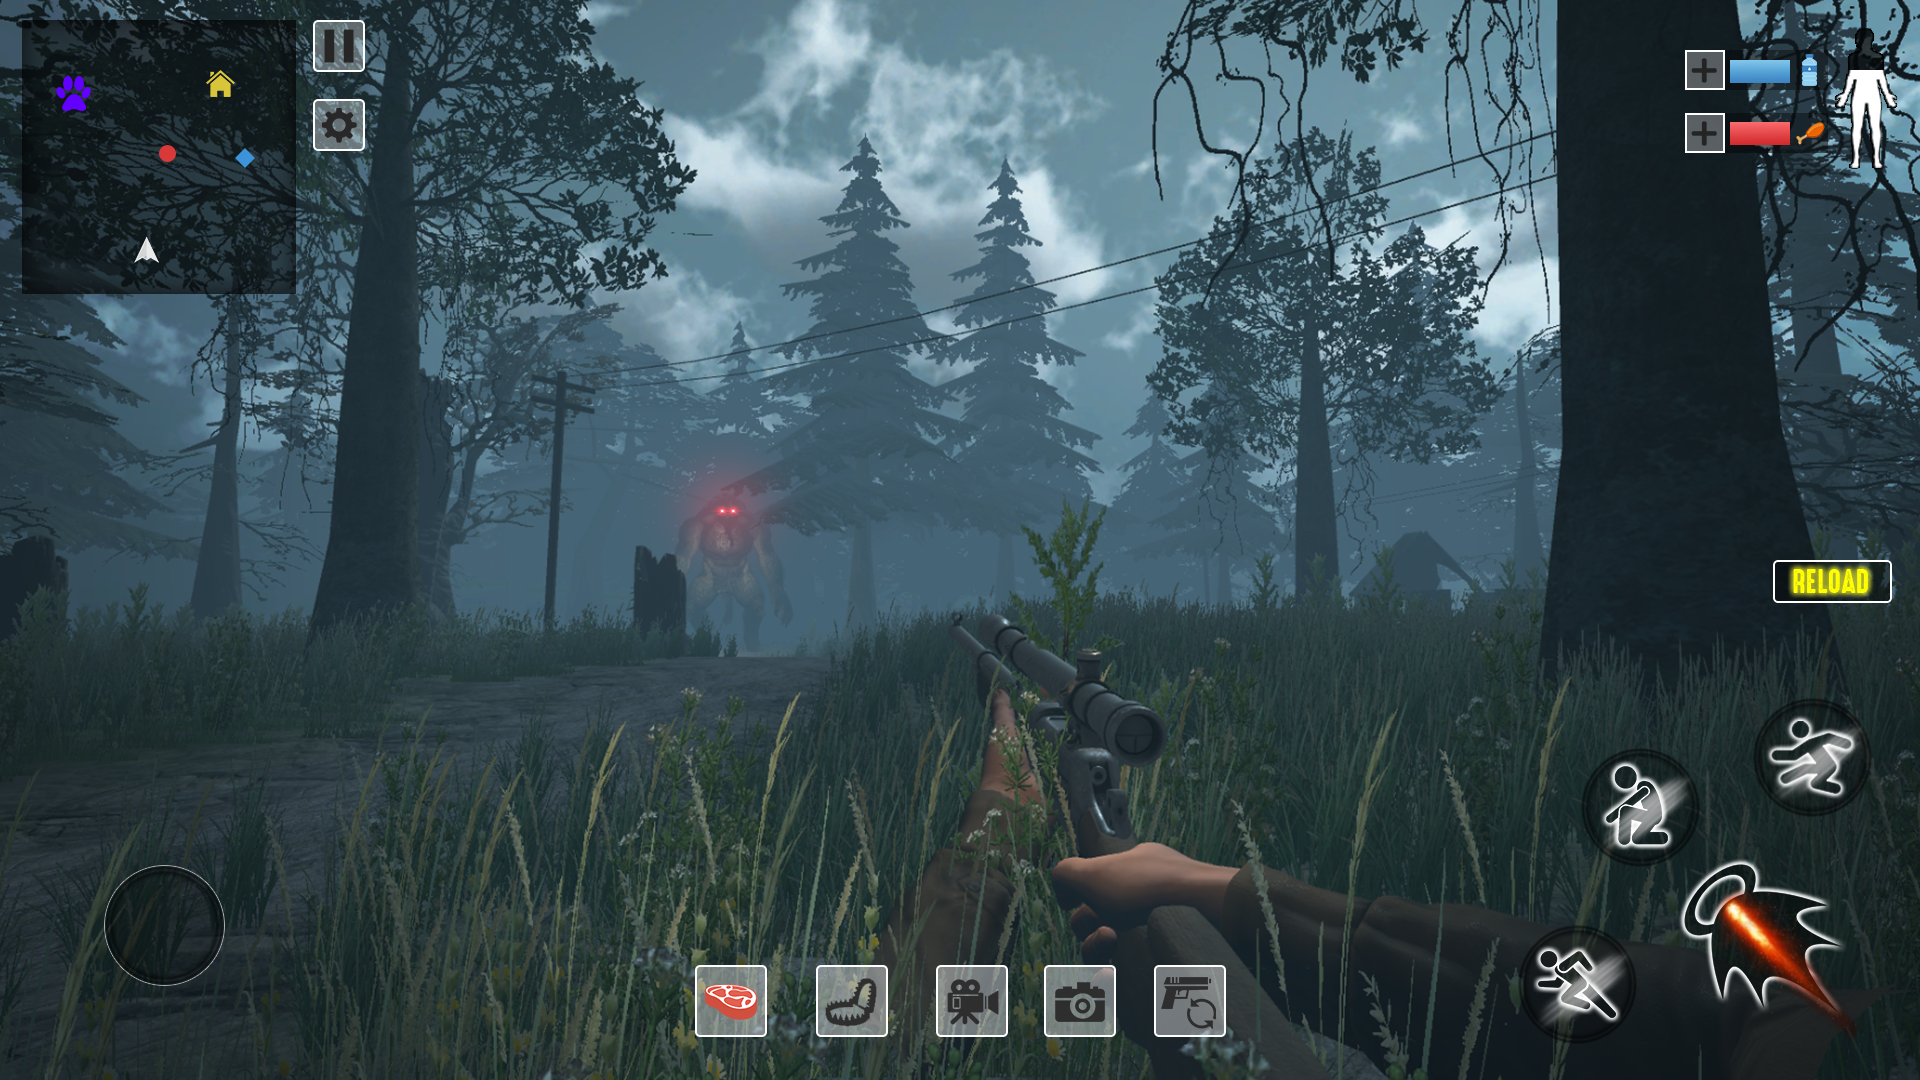 Download do APK de Jogo de sobrevivência de caça e caça Bigfoot para Android